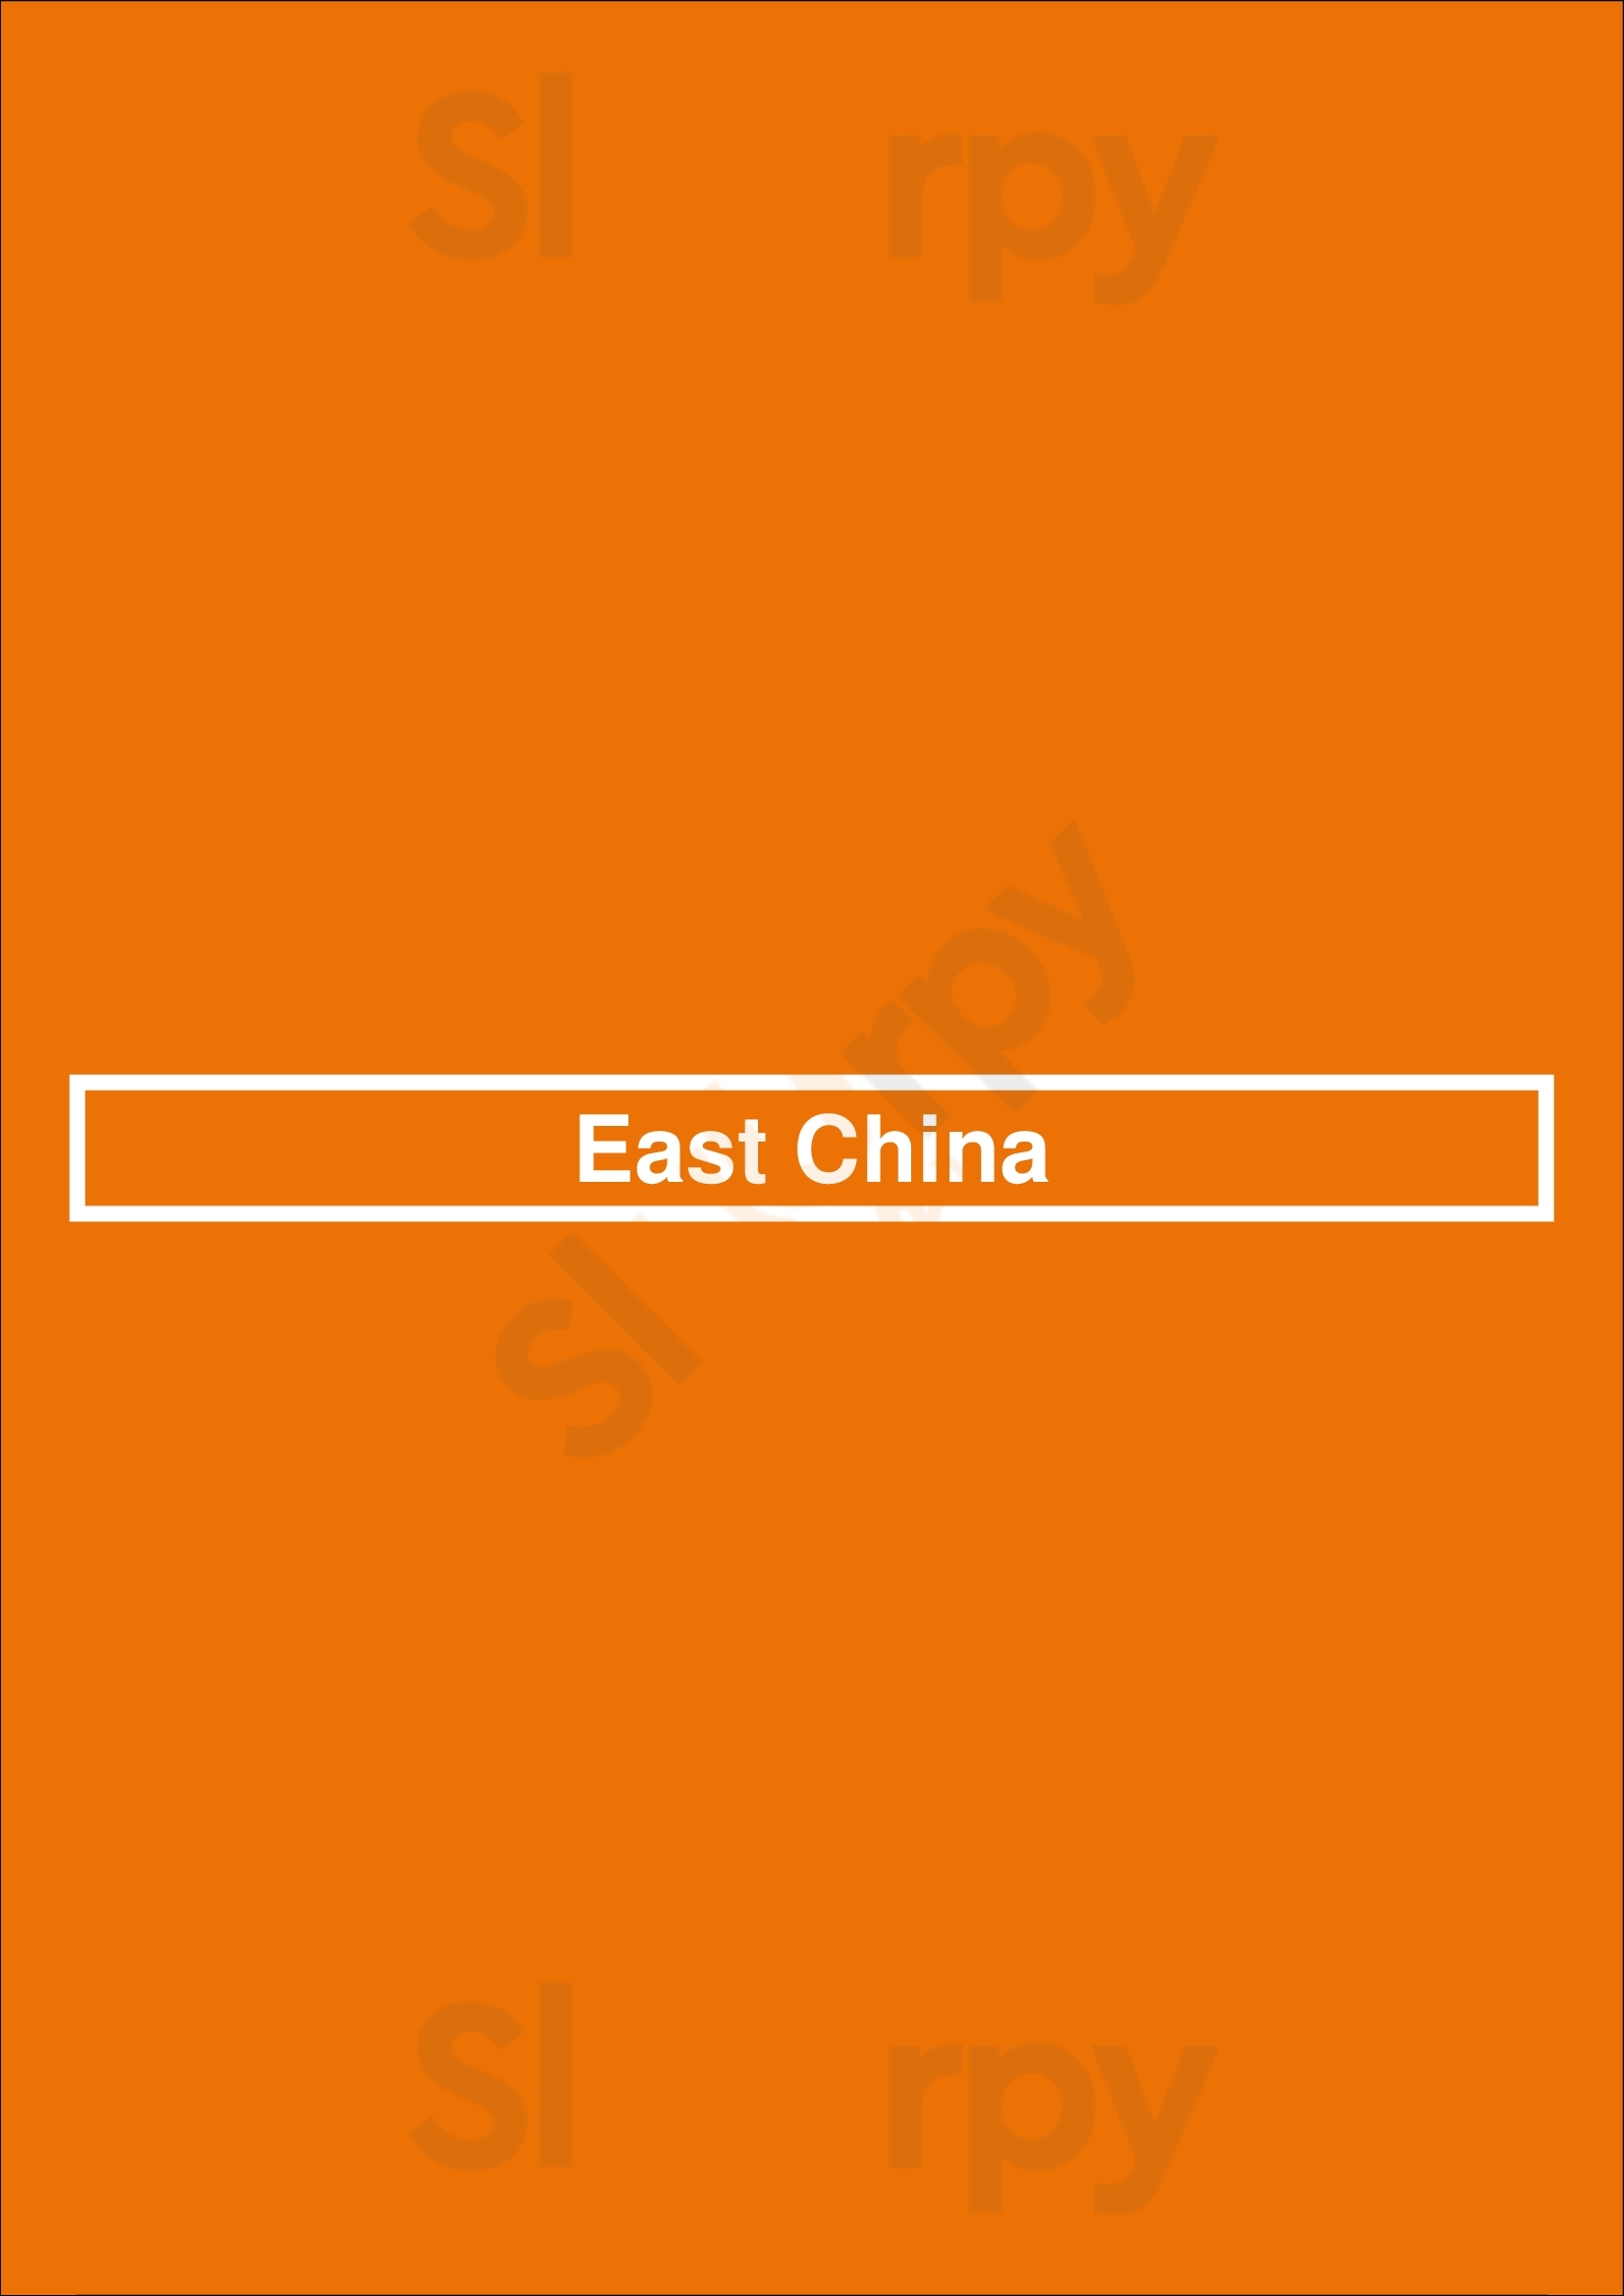 East China Asian Cuisine Aurora Menu - 1